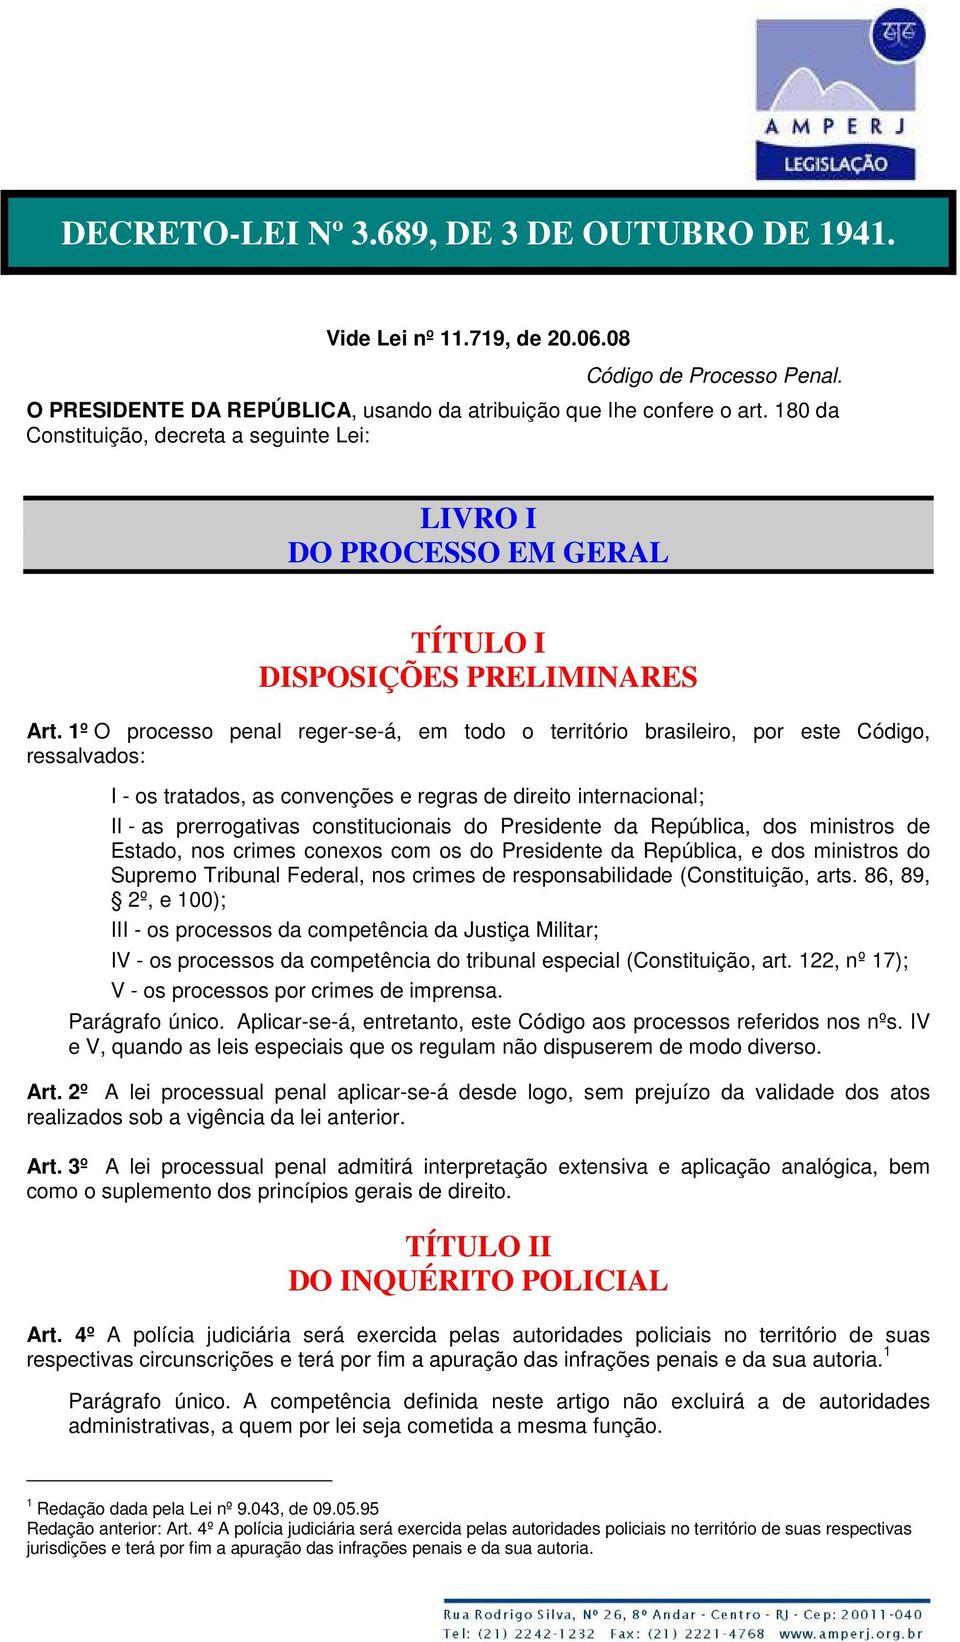 1º O processo penal reger-se-á, em todo o território brasileiro, por este Código, ressalvados: I - os tratados, as convenções e regras de direito internacional; II - as prerrogativas constitucionais